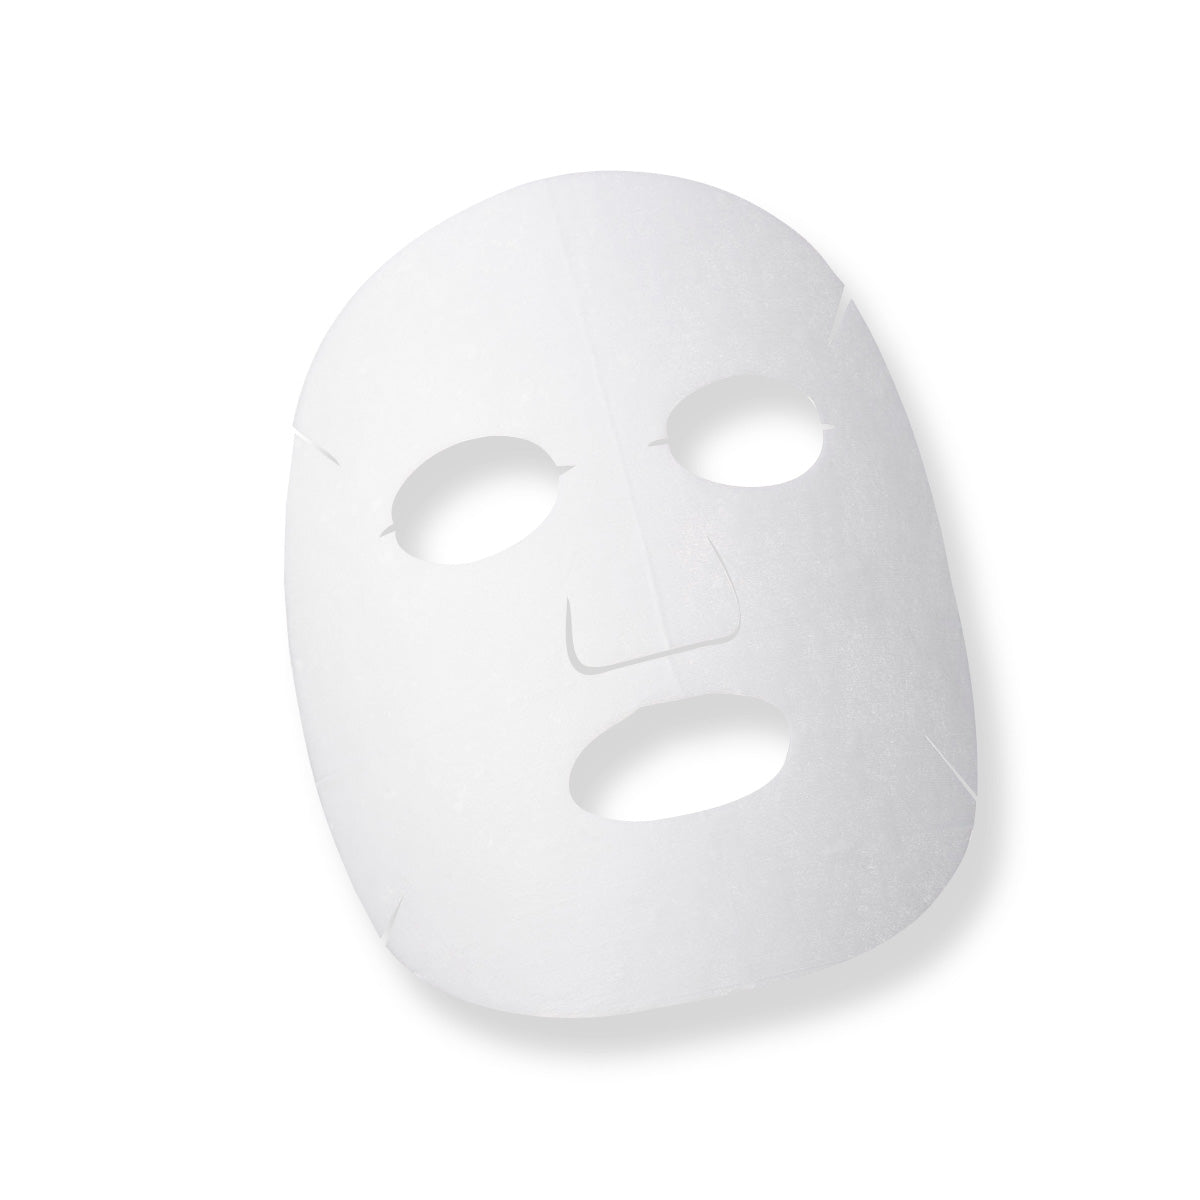 E Special Beauty Mask <Mặt nạ công nghệ tế bào làm đẹp> [20mL / 1 tờ]